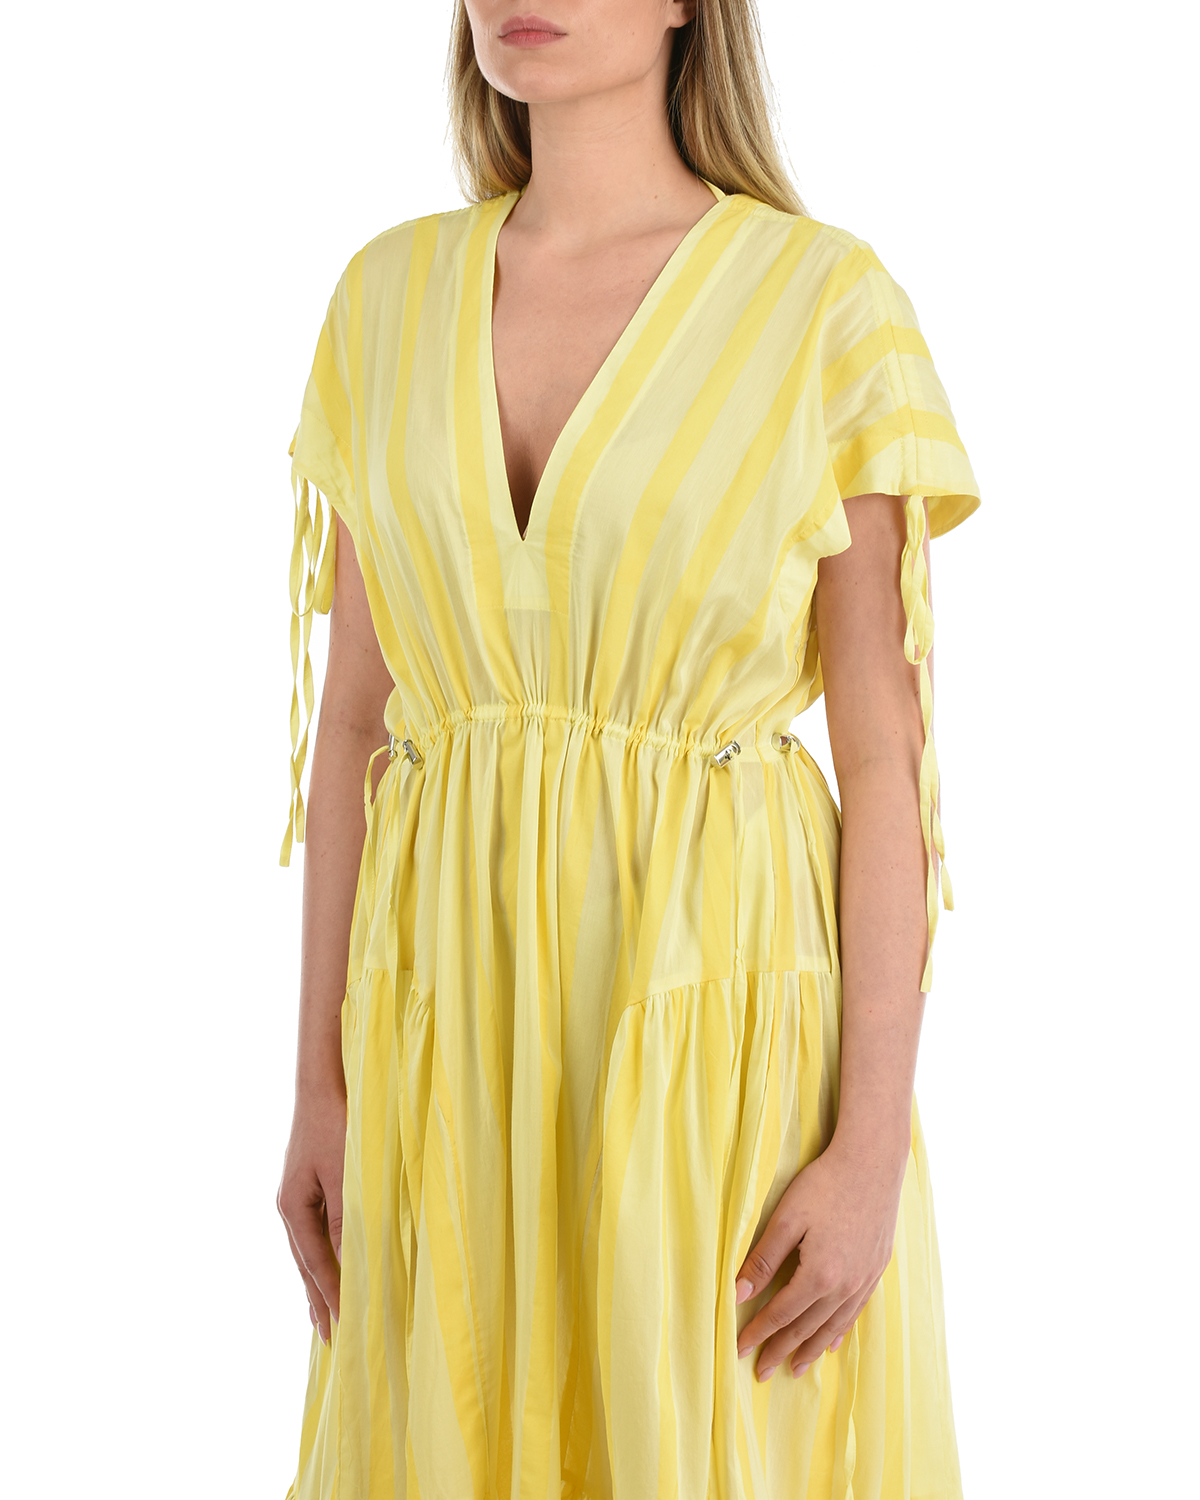 Желтое платье в полоску LOVE BIRDS, размер 40, цвет желтый - фото 7